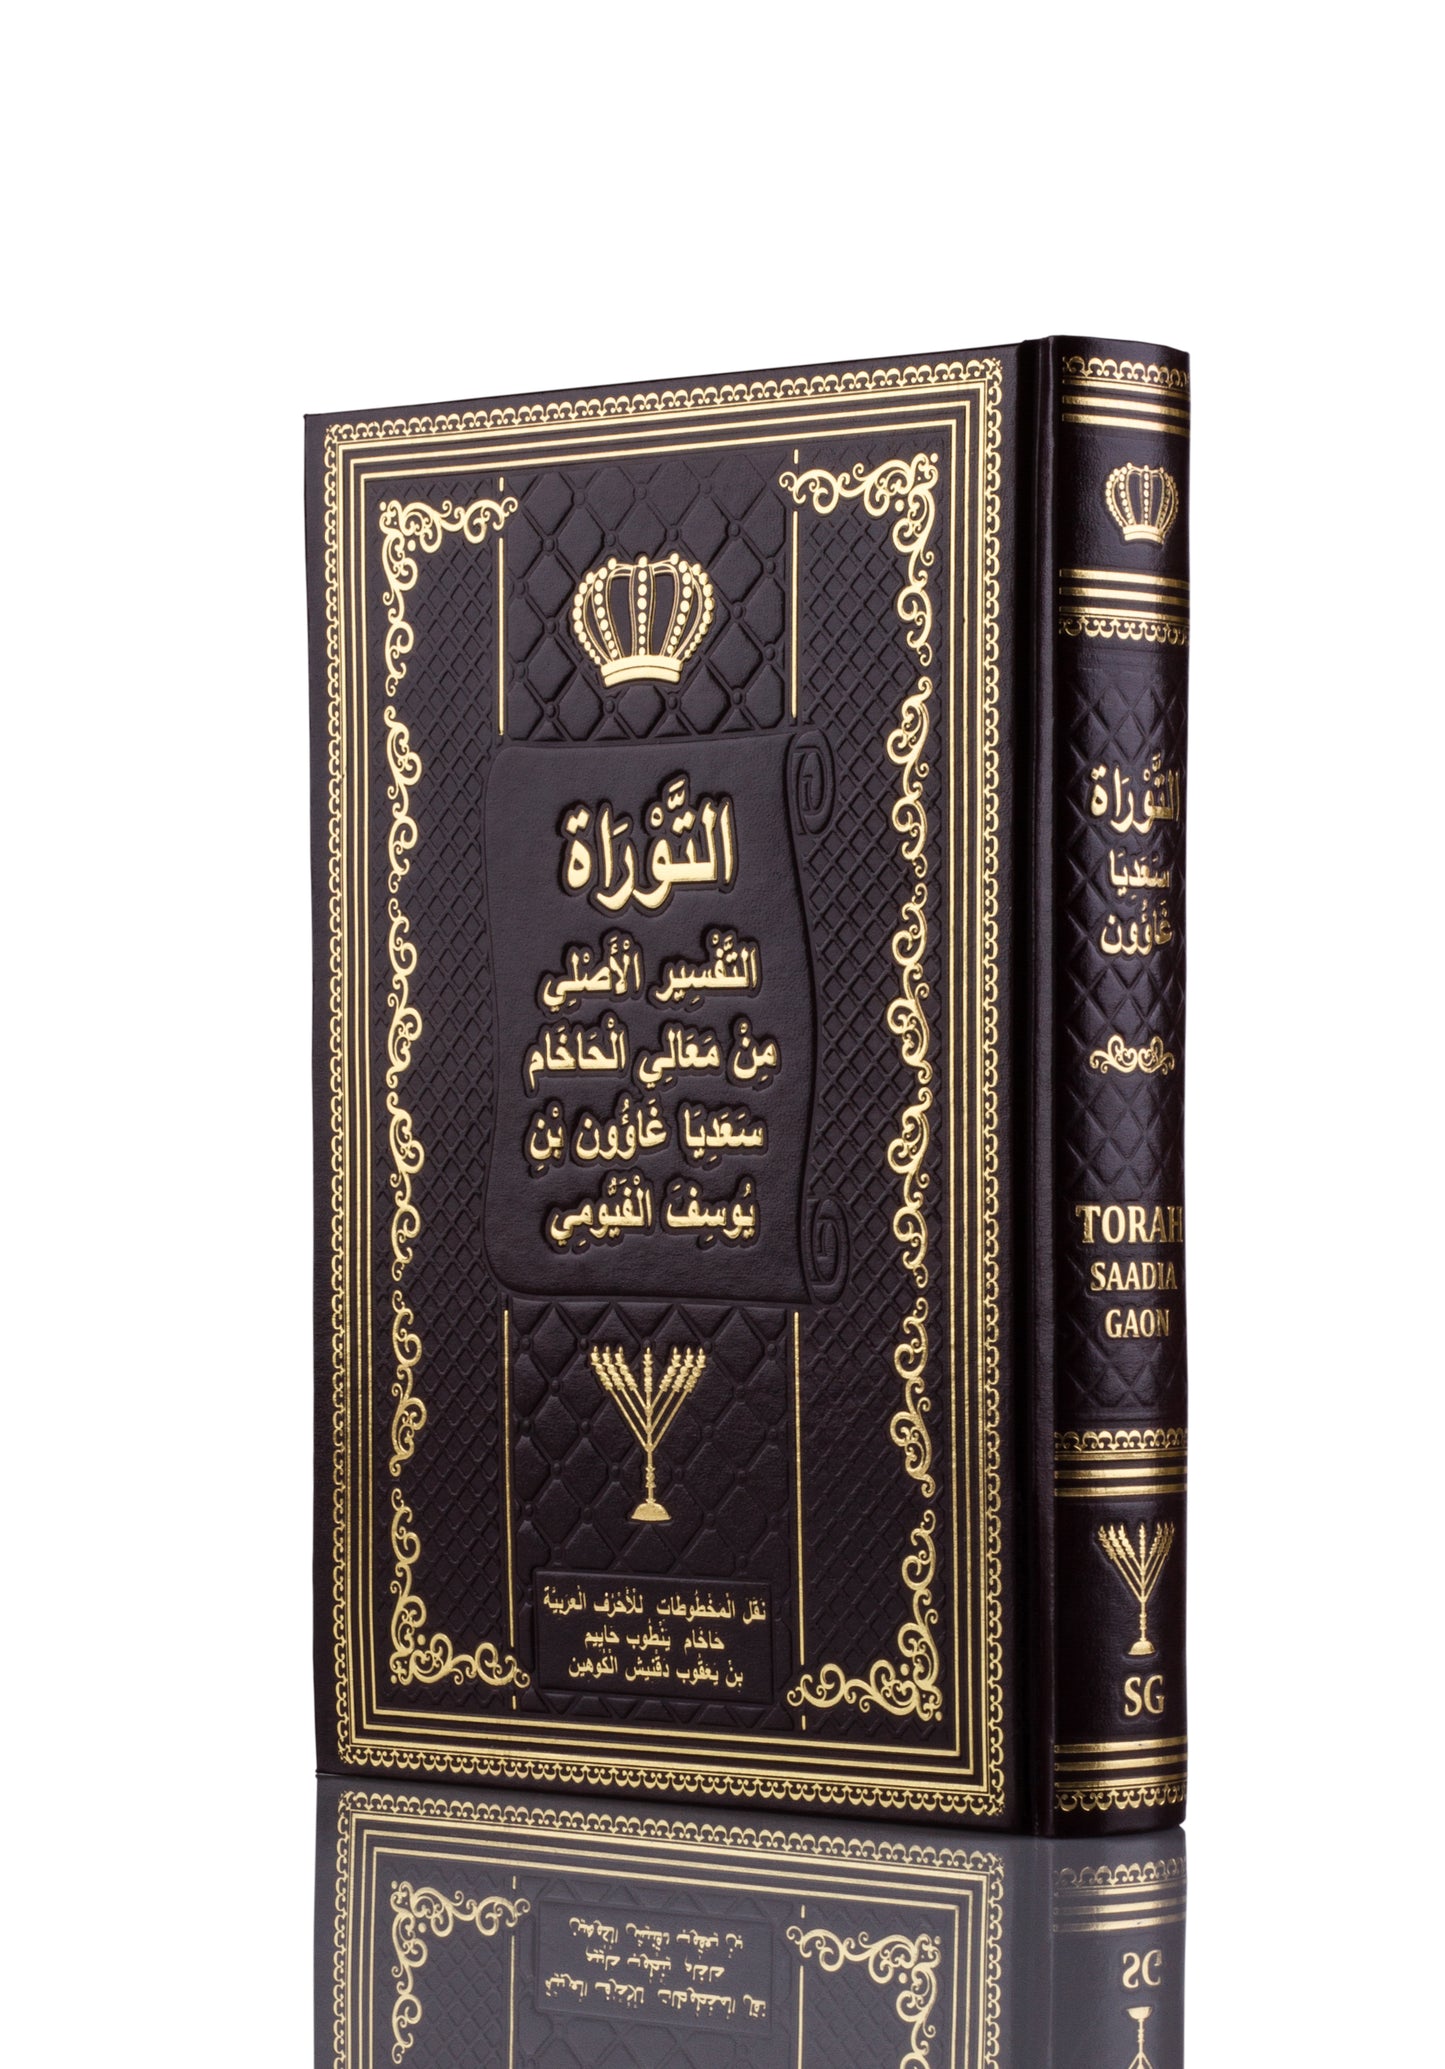 التوراة باللغة العربیة - ترجمة وتعلیق الحاخام سعدیة غاون (Tora in Arabic)